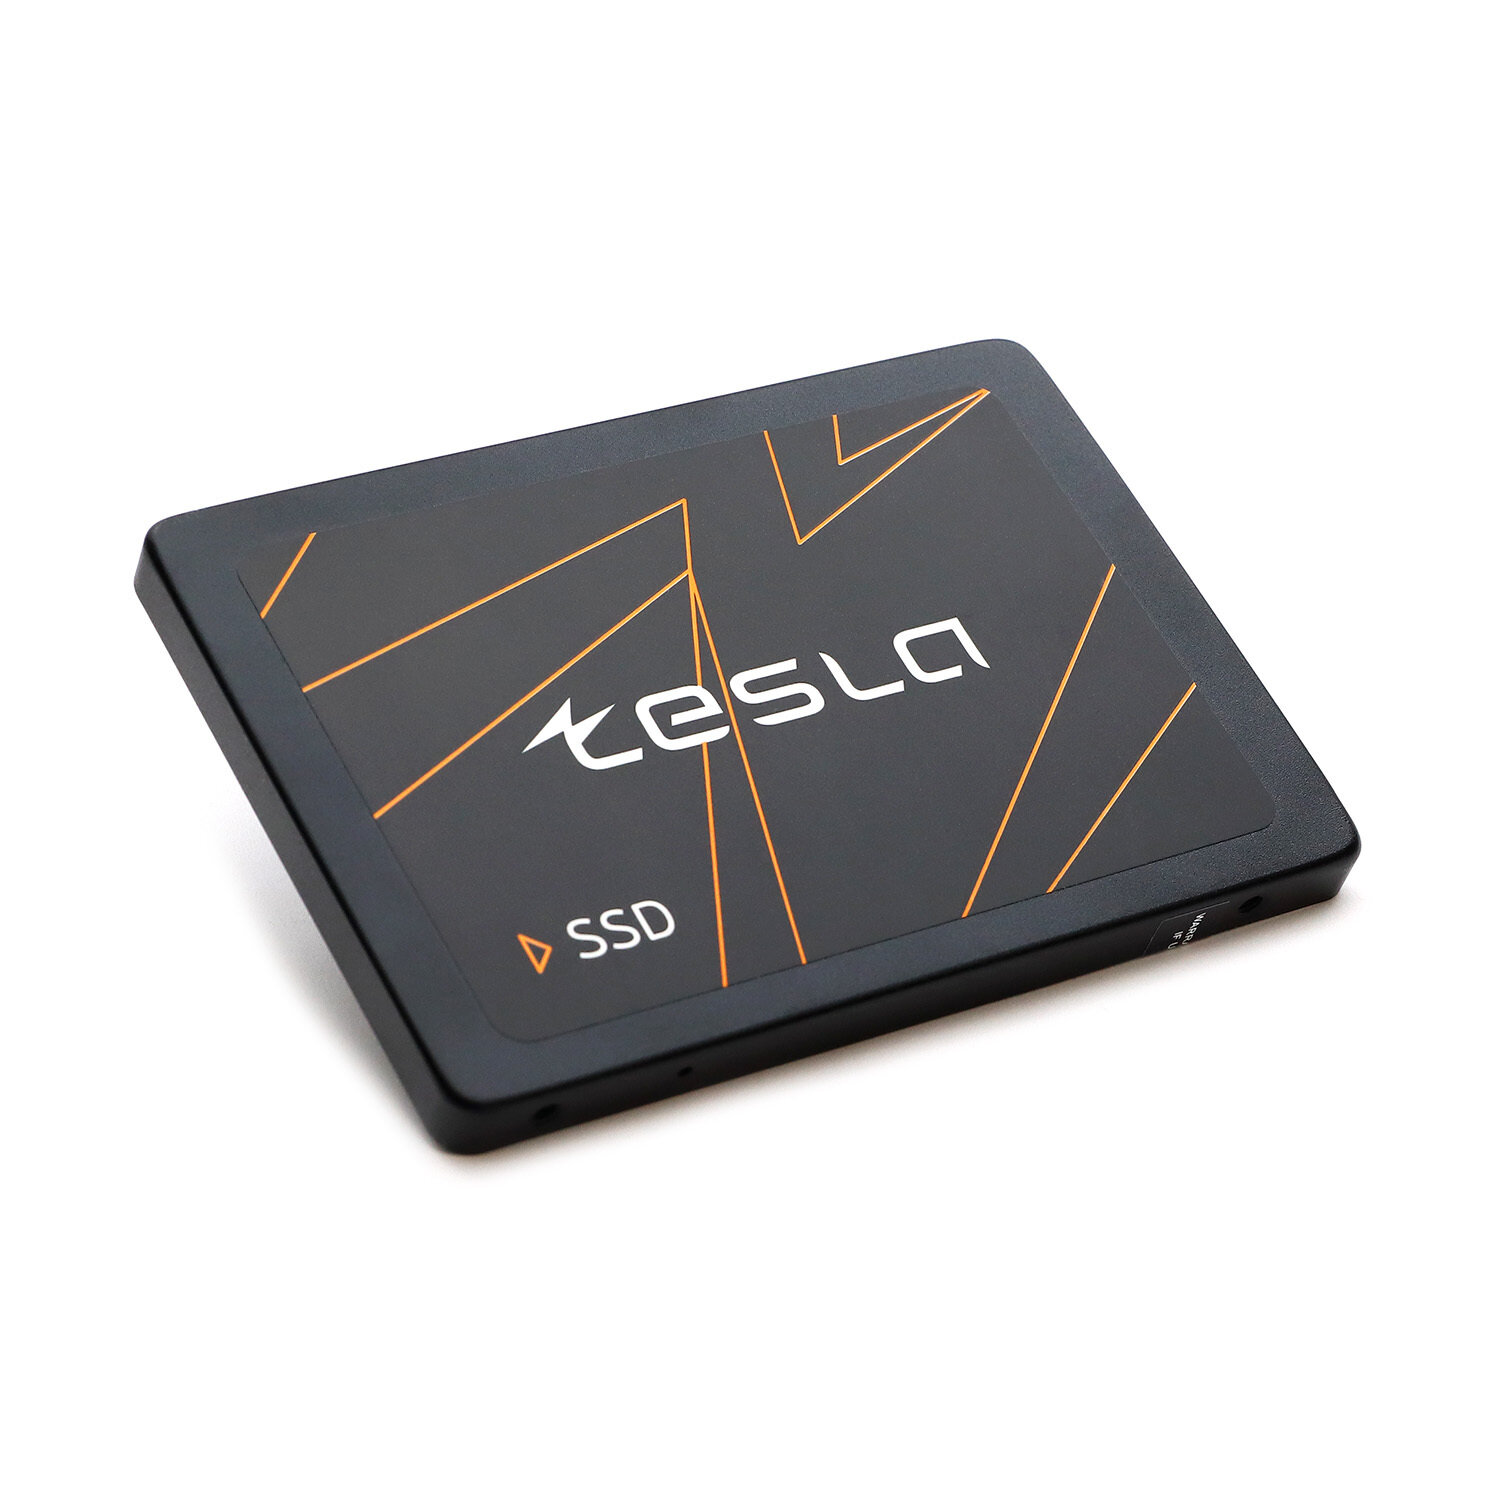 Твердотельный накопитель Tesla 480 ГБ SSDTSLA-480GS3